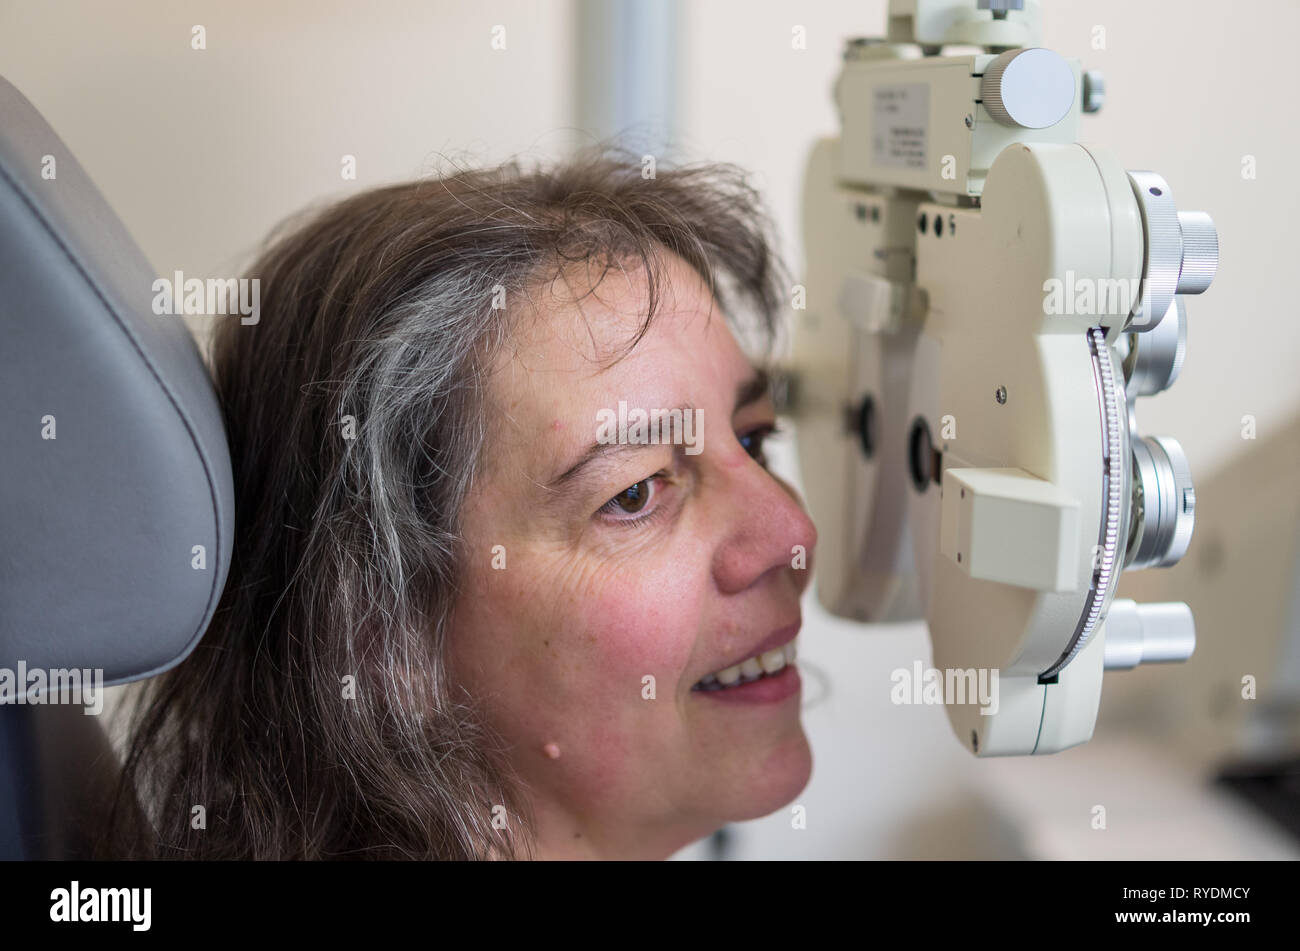 Beim Augenoptiker / Augenarzt / Brille / Augenwerte überprüfen / Frau Sehtest beim Augenoptiker. Stock Photo